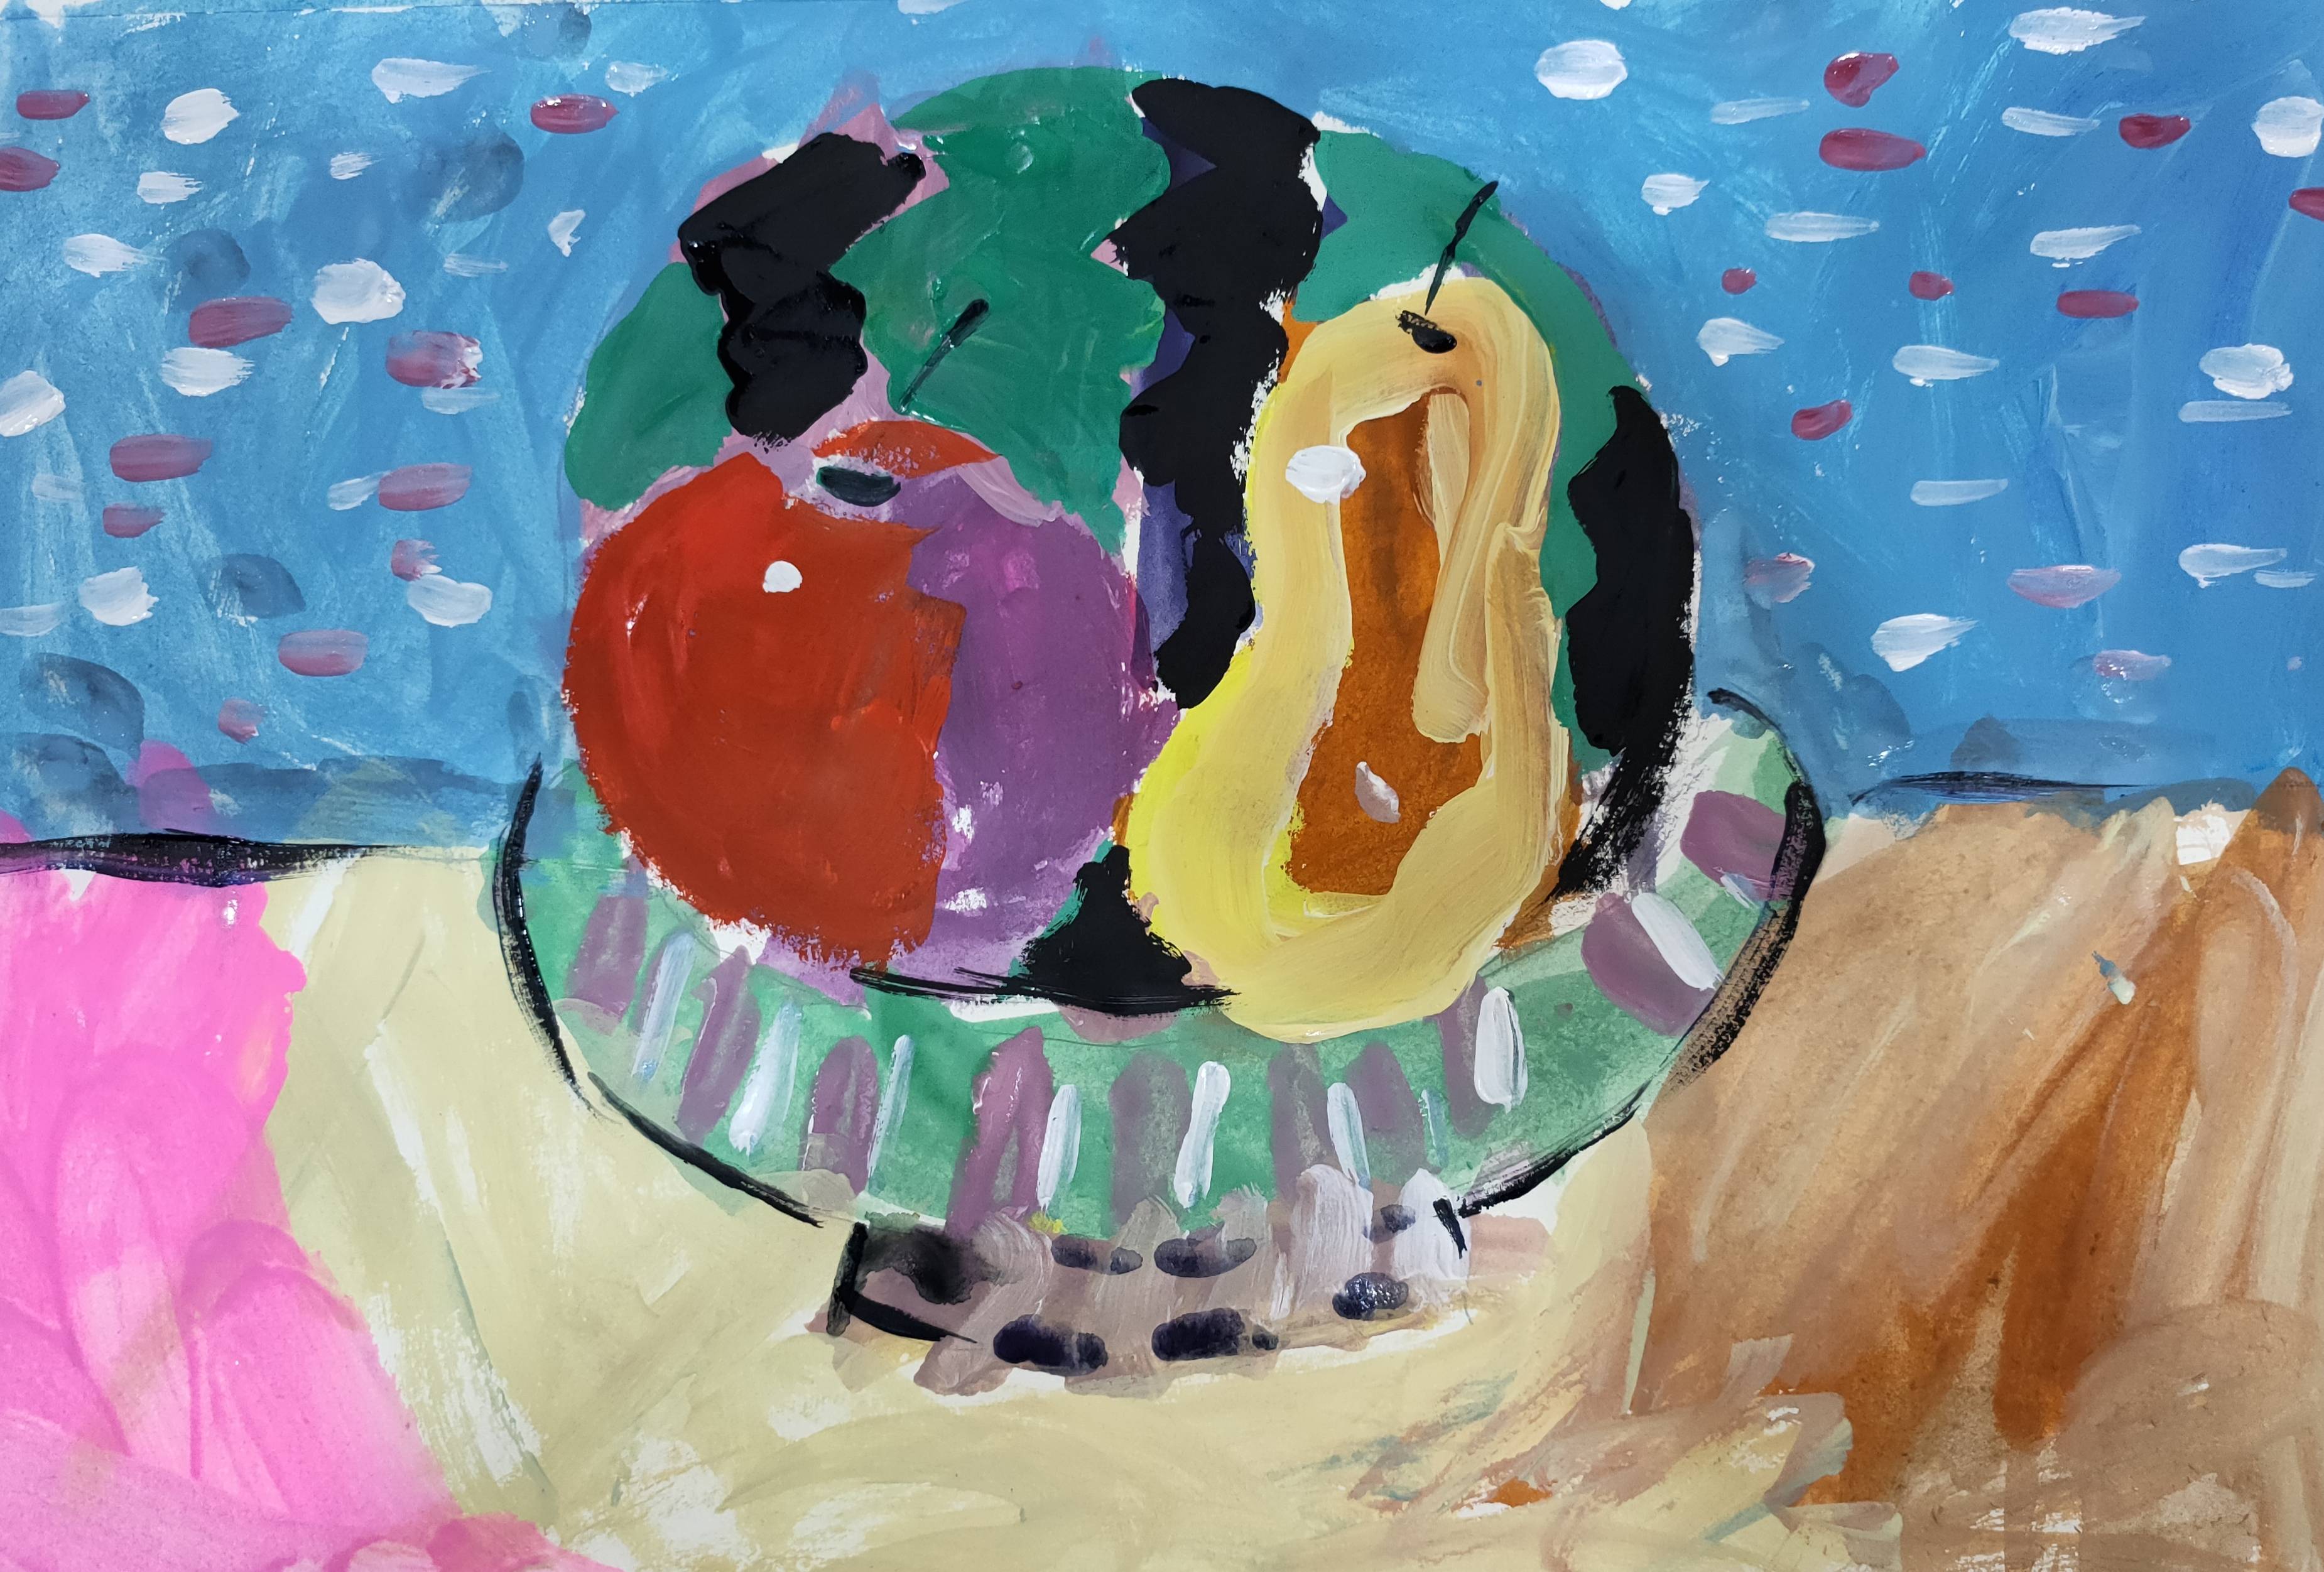 水粉画作业, 评语: 4岁小孩画画有胆量,该小朋友第一次学画画,色彩